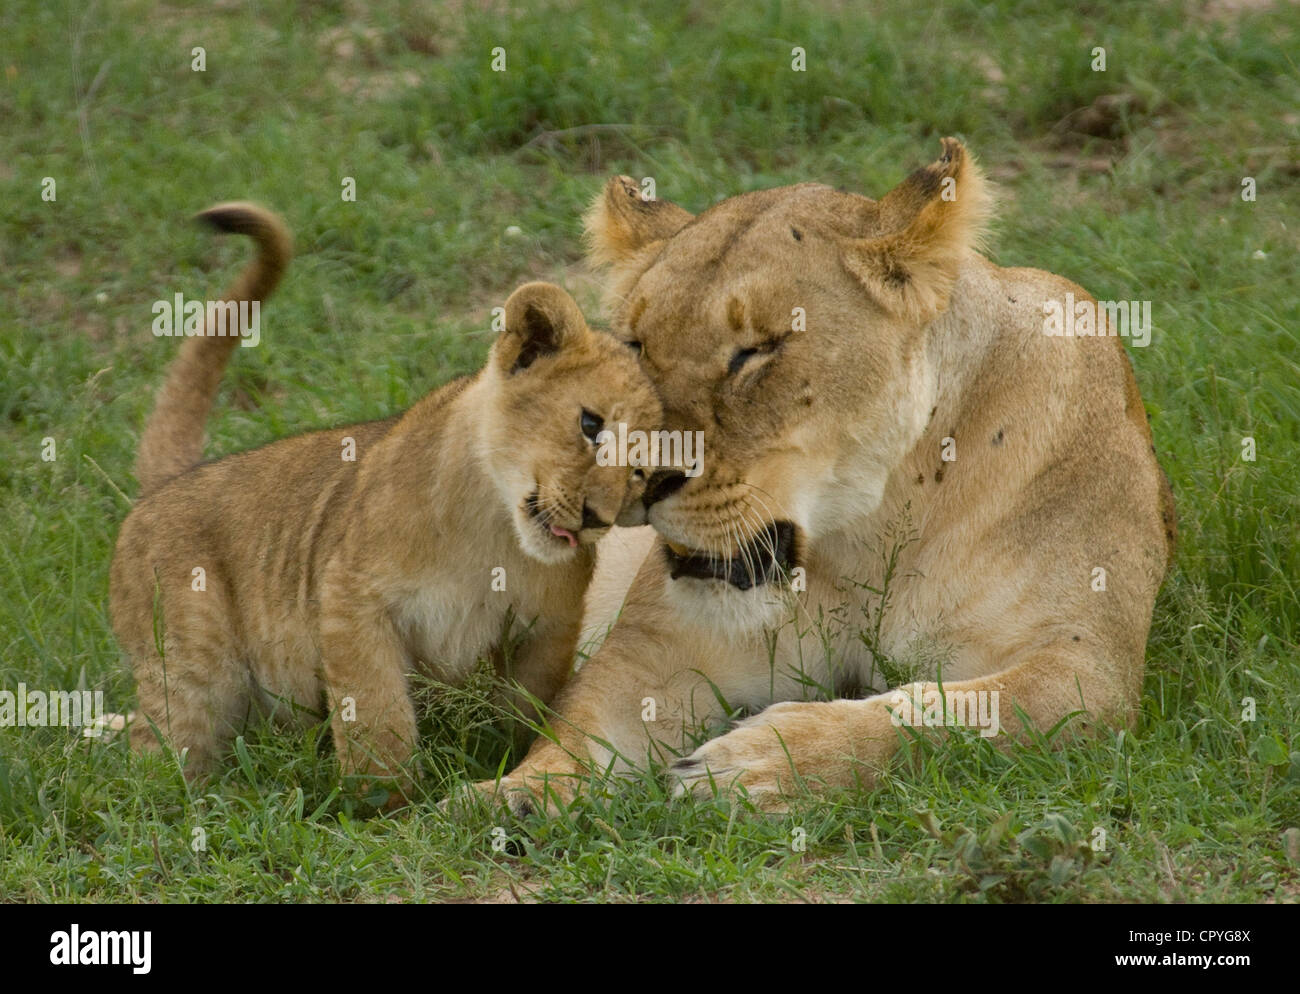 Cachorro de león frota contra león Foto de stock